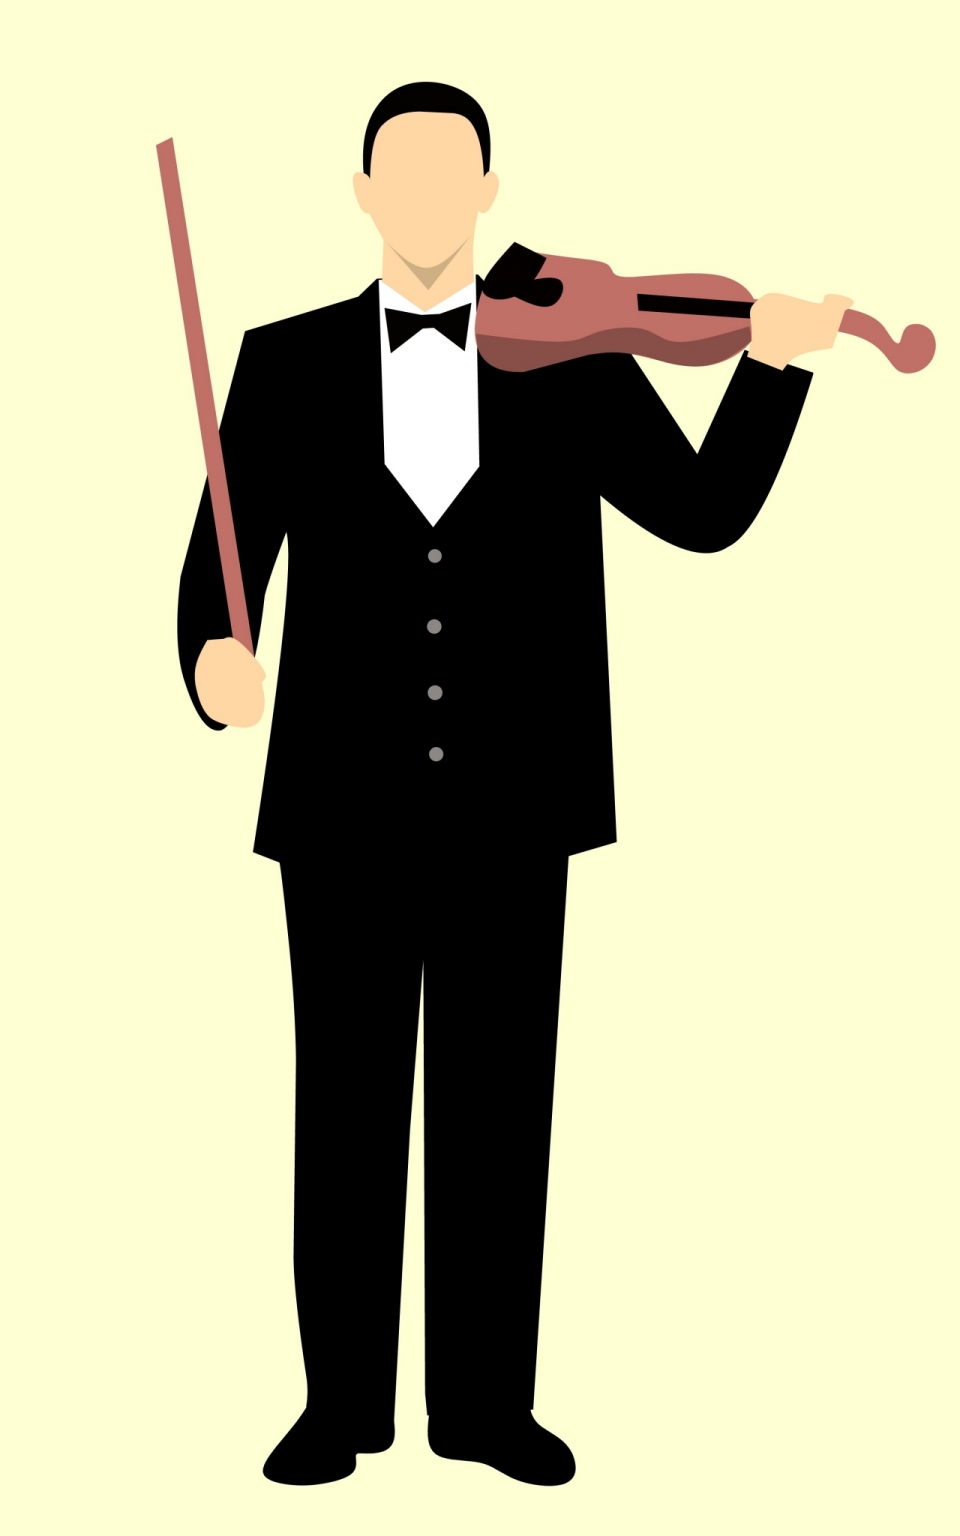 穿着黑礼服拉小提琴的男人卡通形象